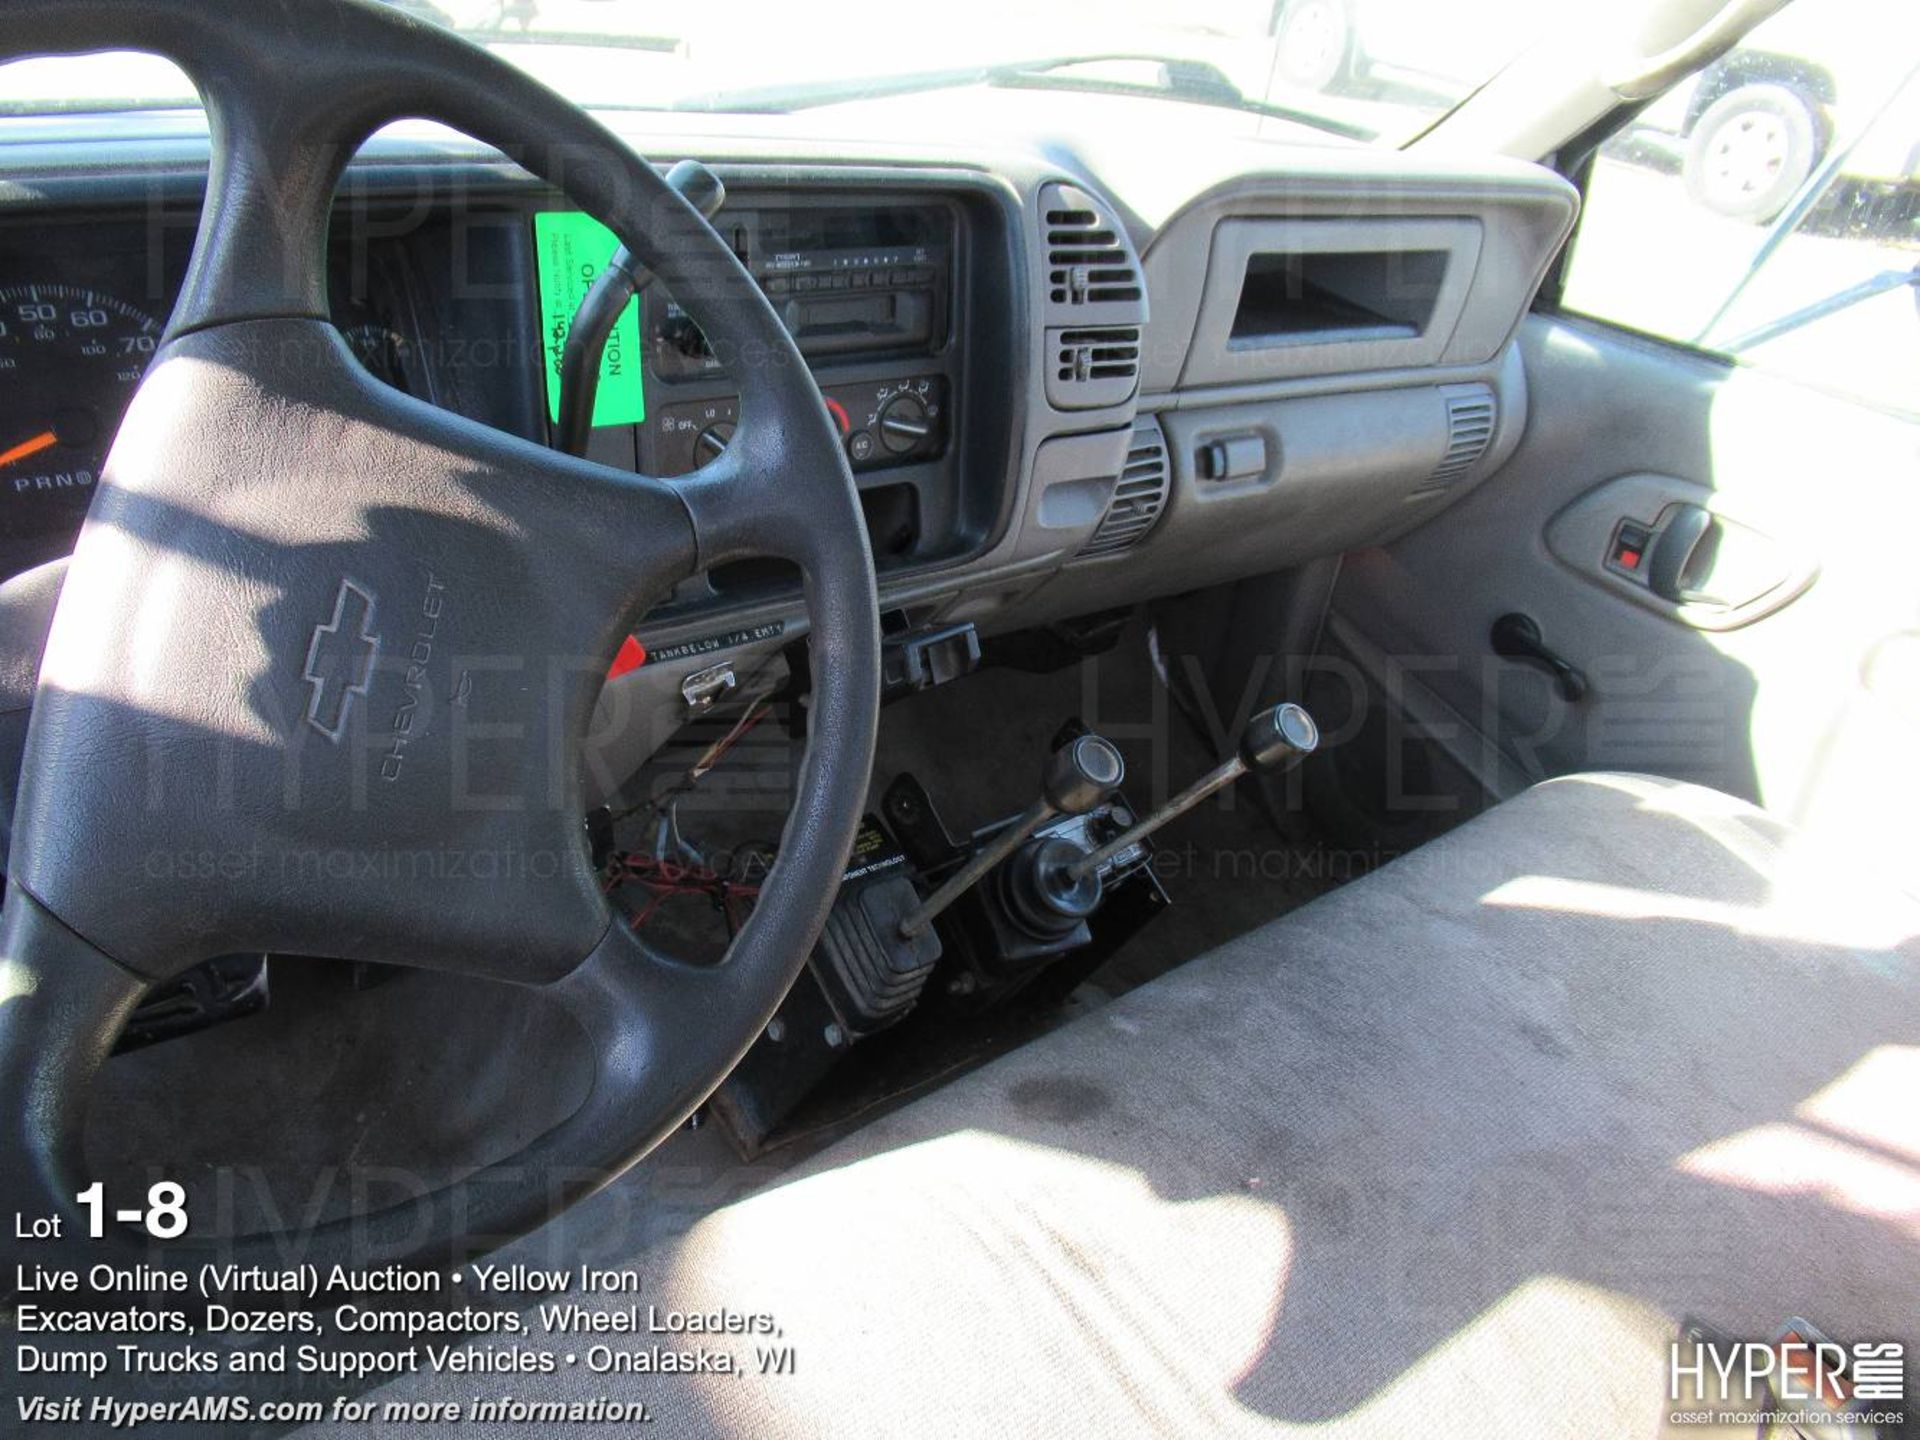 2001 Chevrolet Silverado 3500 Flatbed Dump - Image 8 of 9